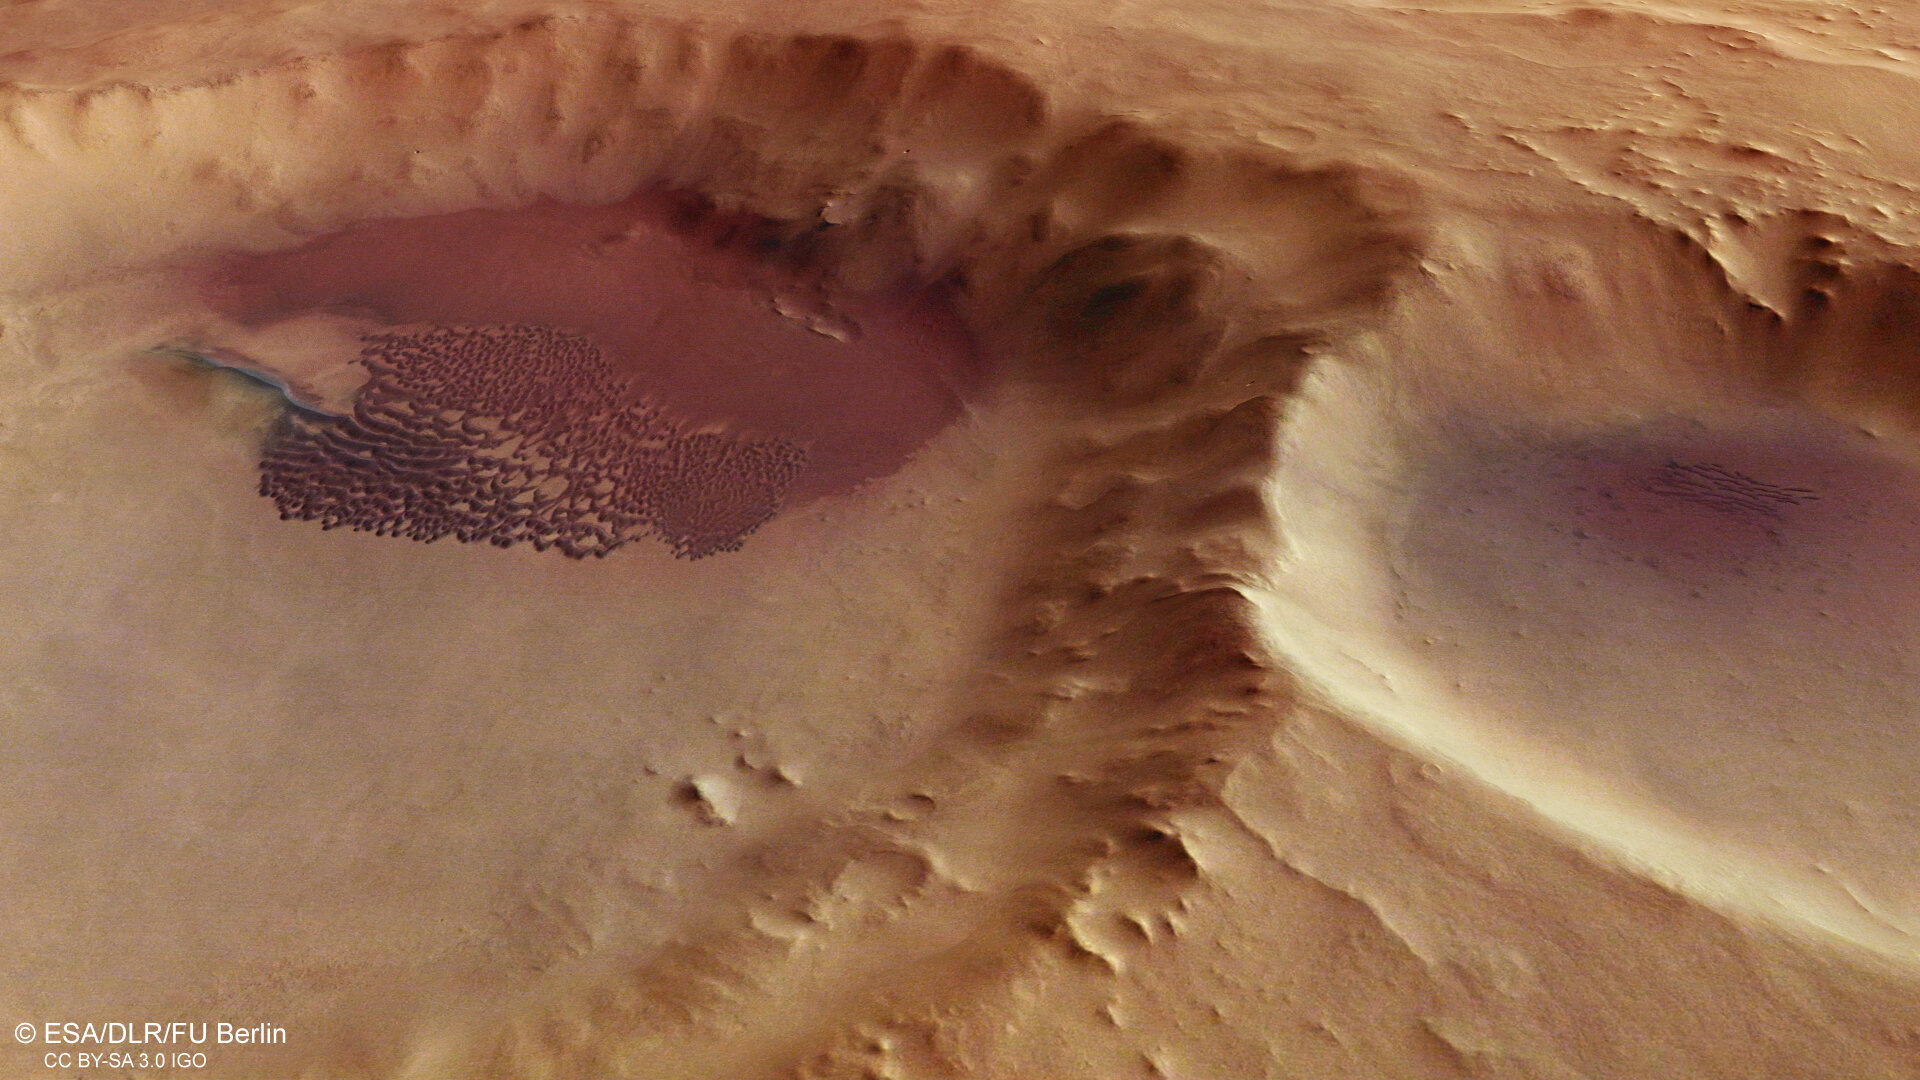 Campo de dunas en un cráter, vista en perspectiva